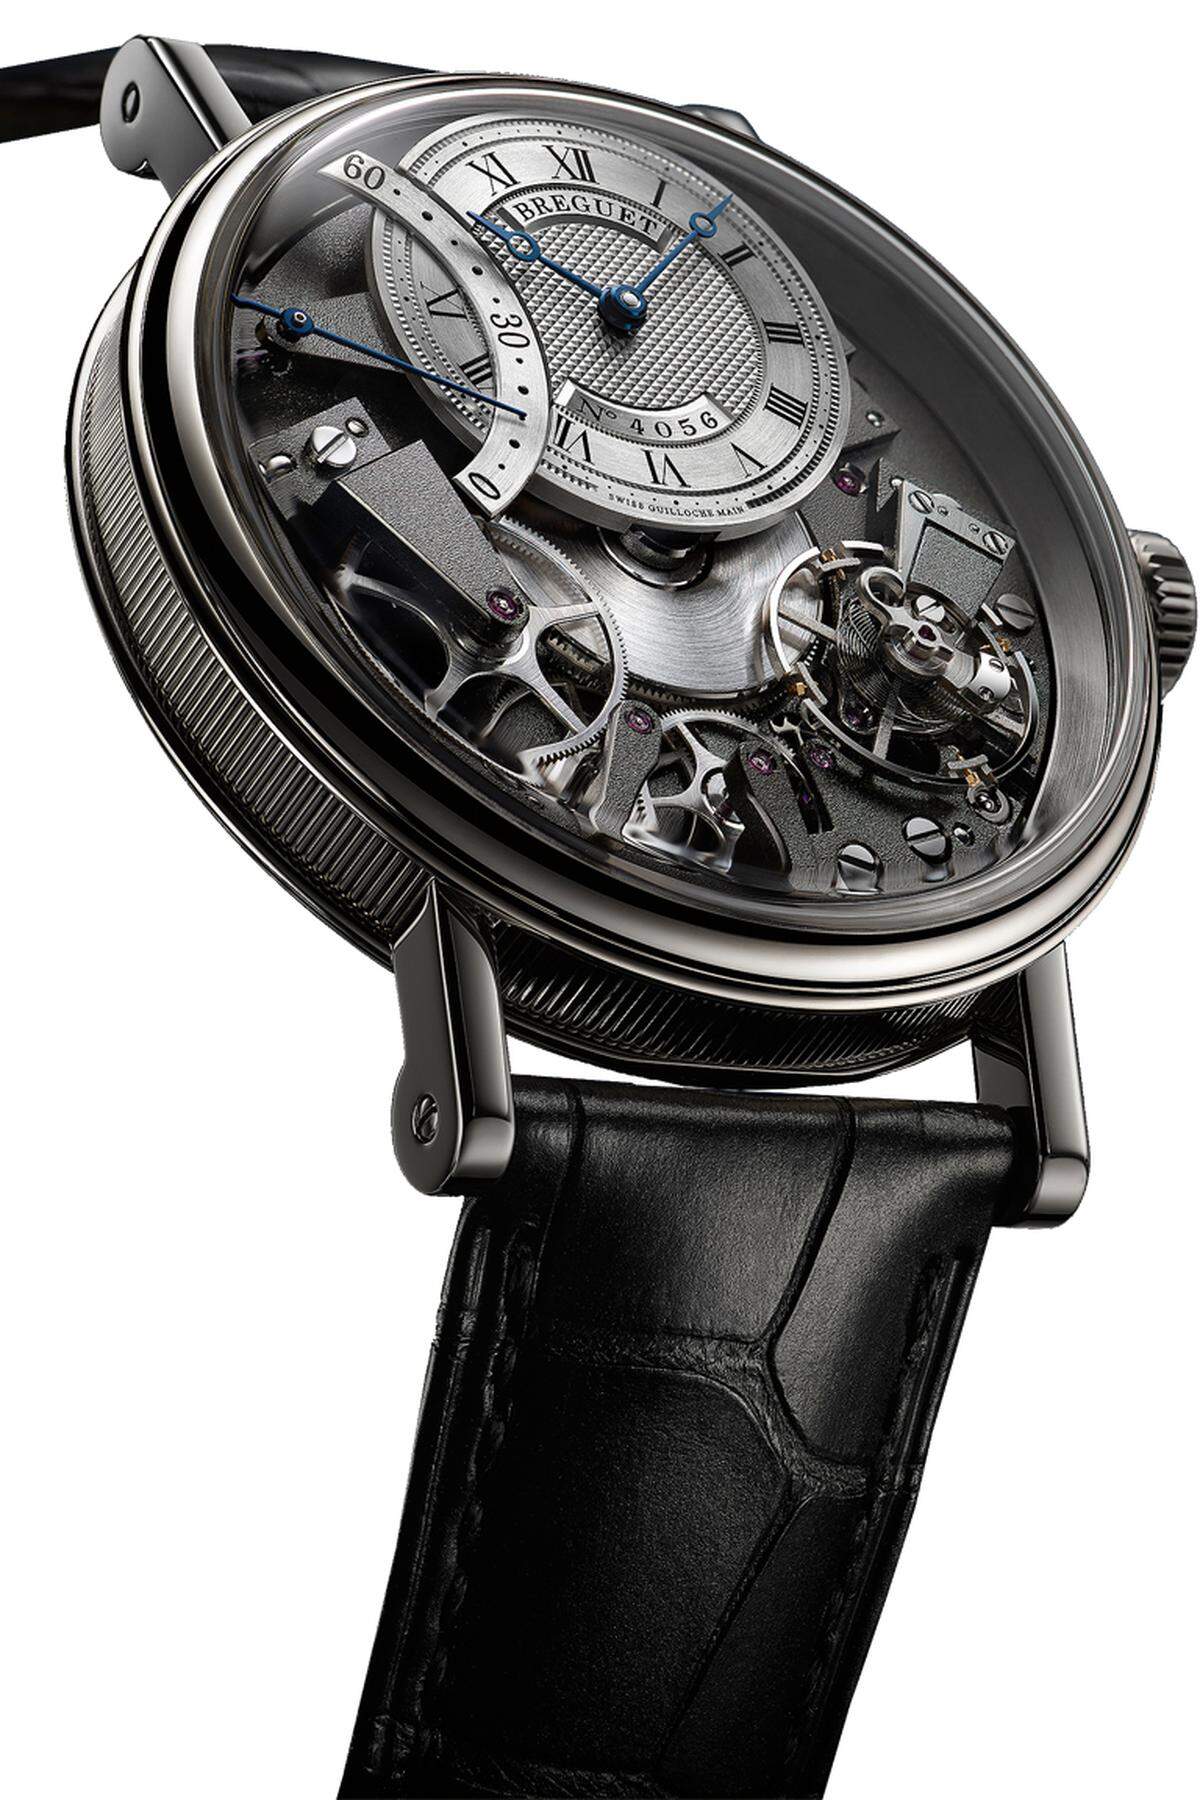 Eine Armbanduhr, gefertigt ganz im Sinn und Stil des Gründervaters Abraham-Louis Breguet. Das ist großes Kino fürs Hand-gelenk.